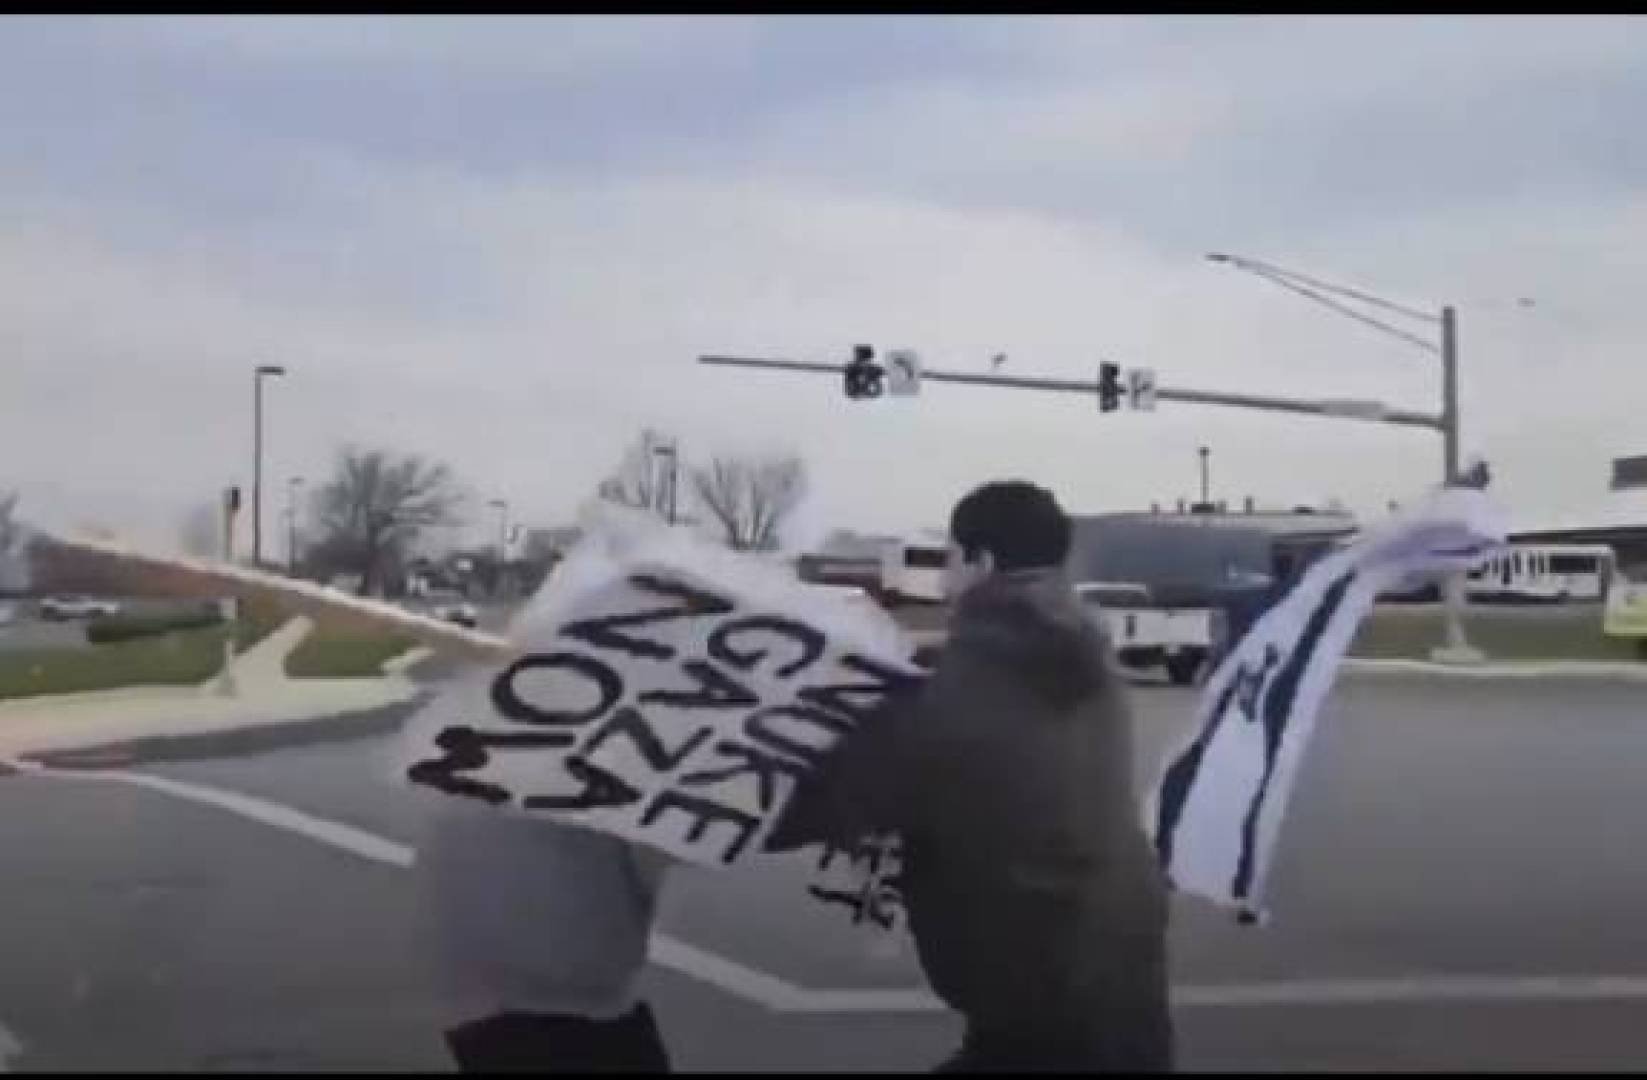 بالفيديو أمريكي يتعرض للضرب بعد رفعه لافتة تدعو لإبادة سكان غزة بالنووي